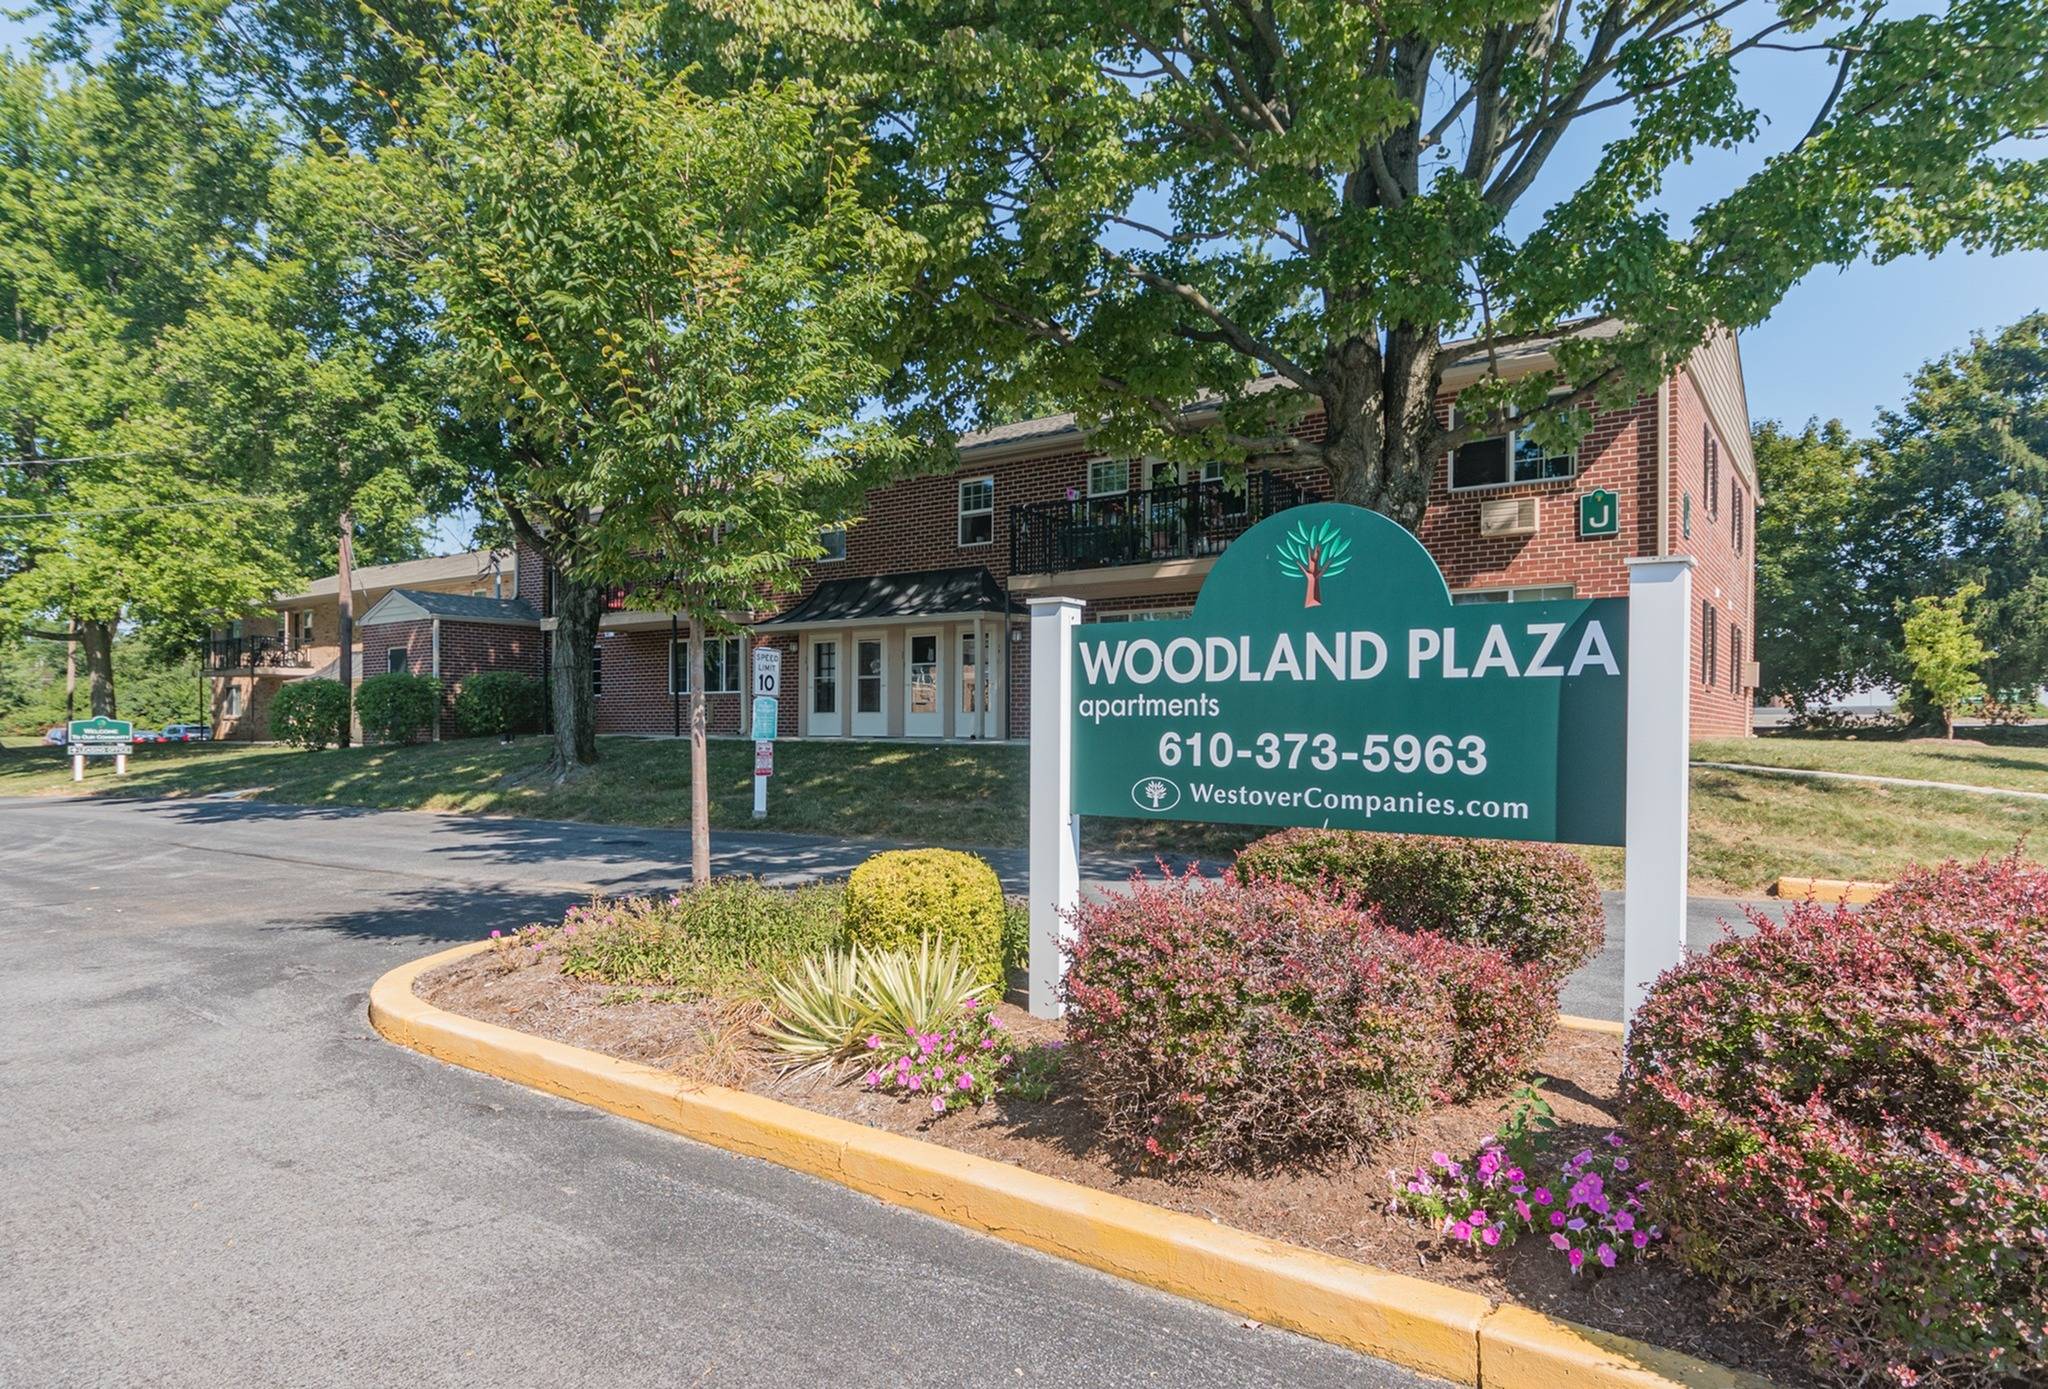 Woodland Plaza signage at the entrance